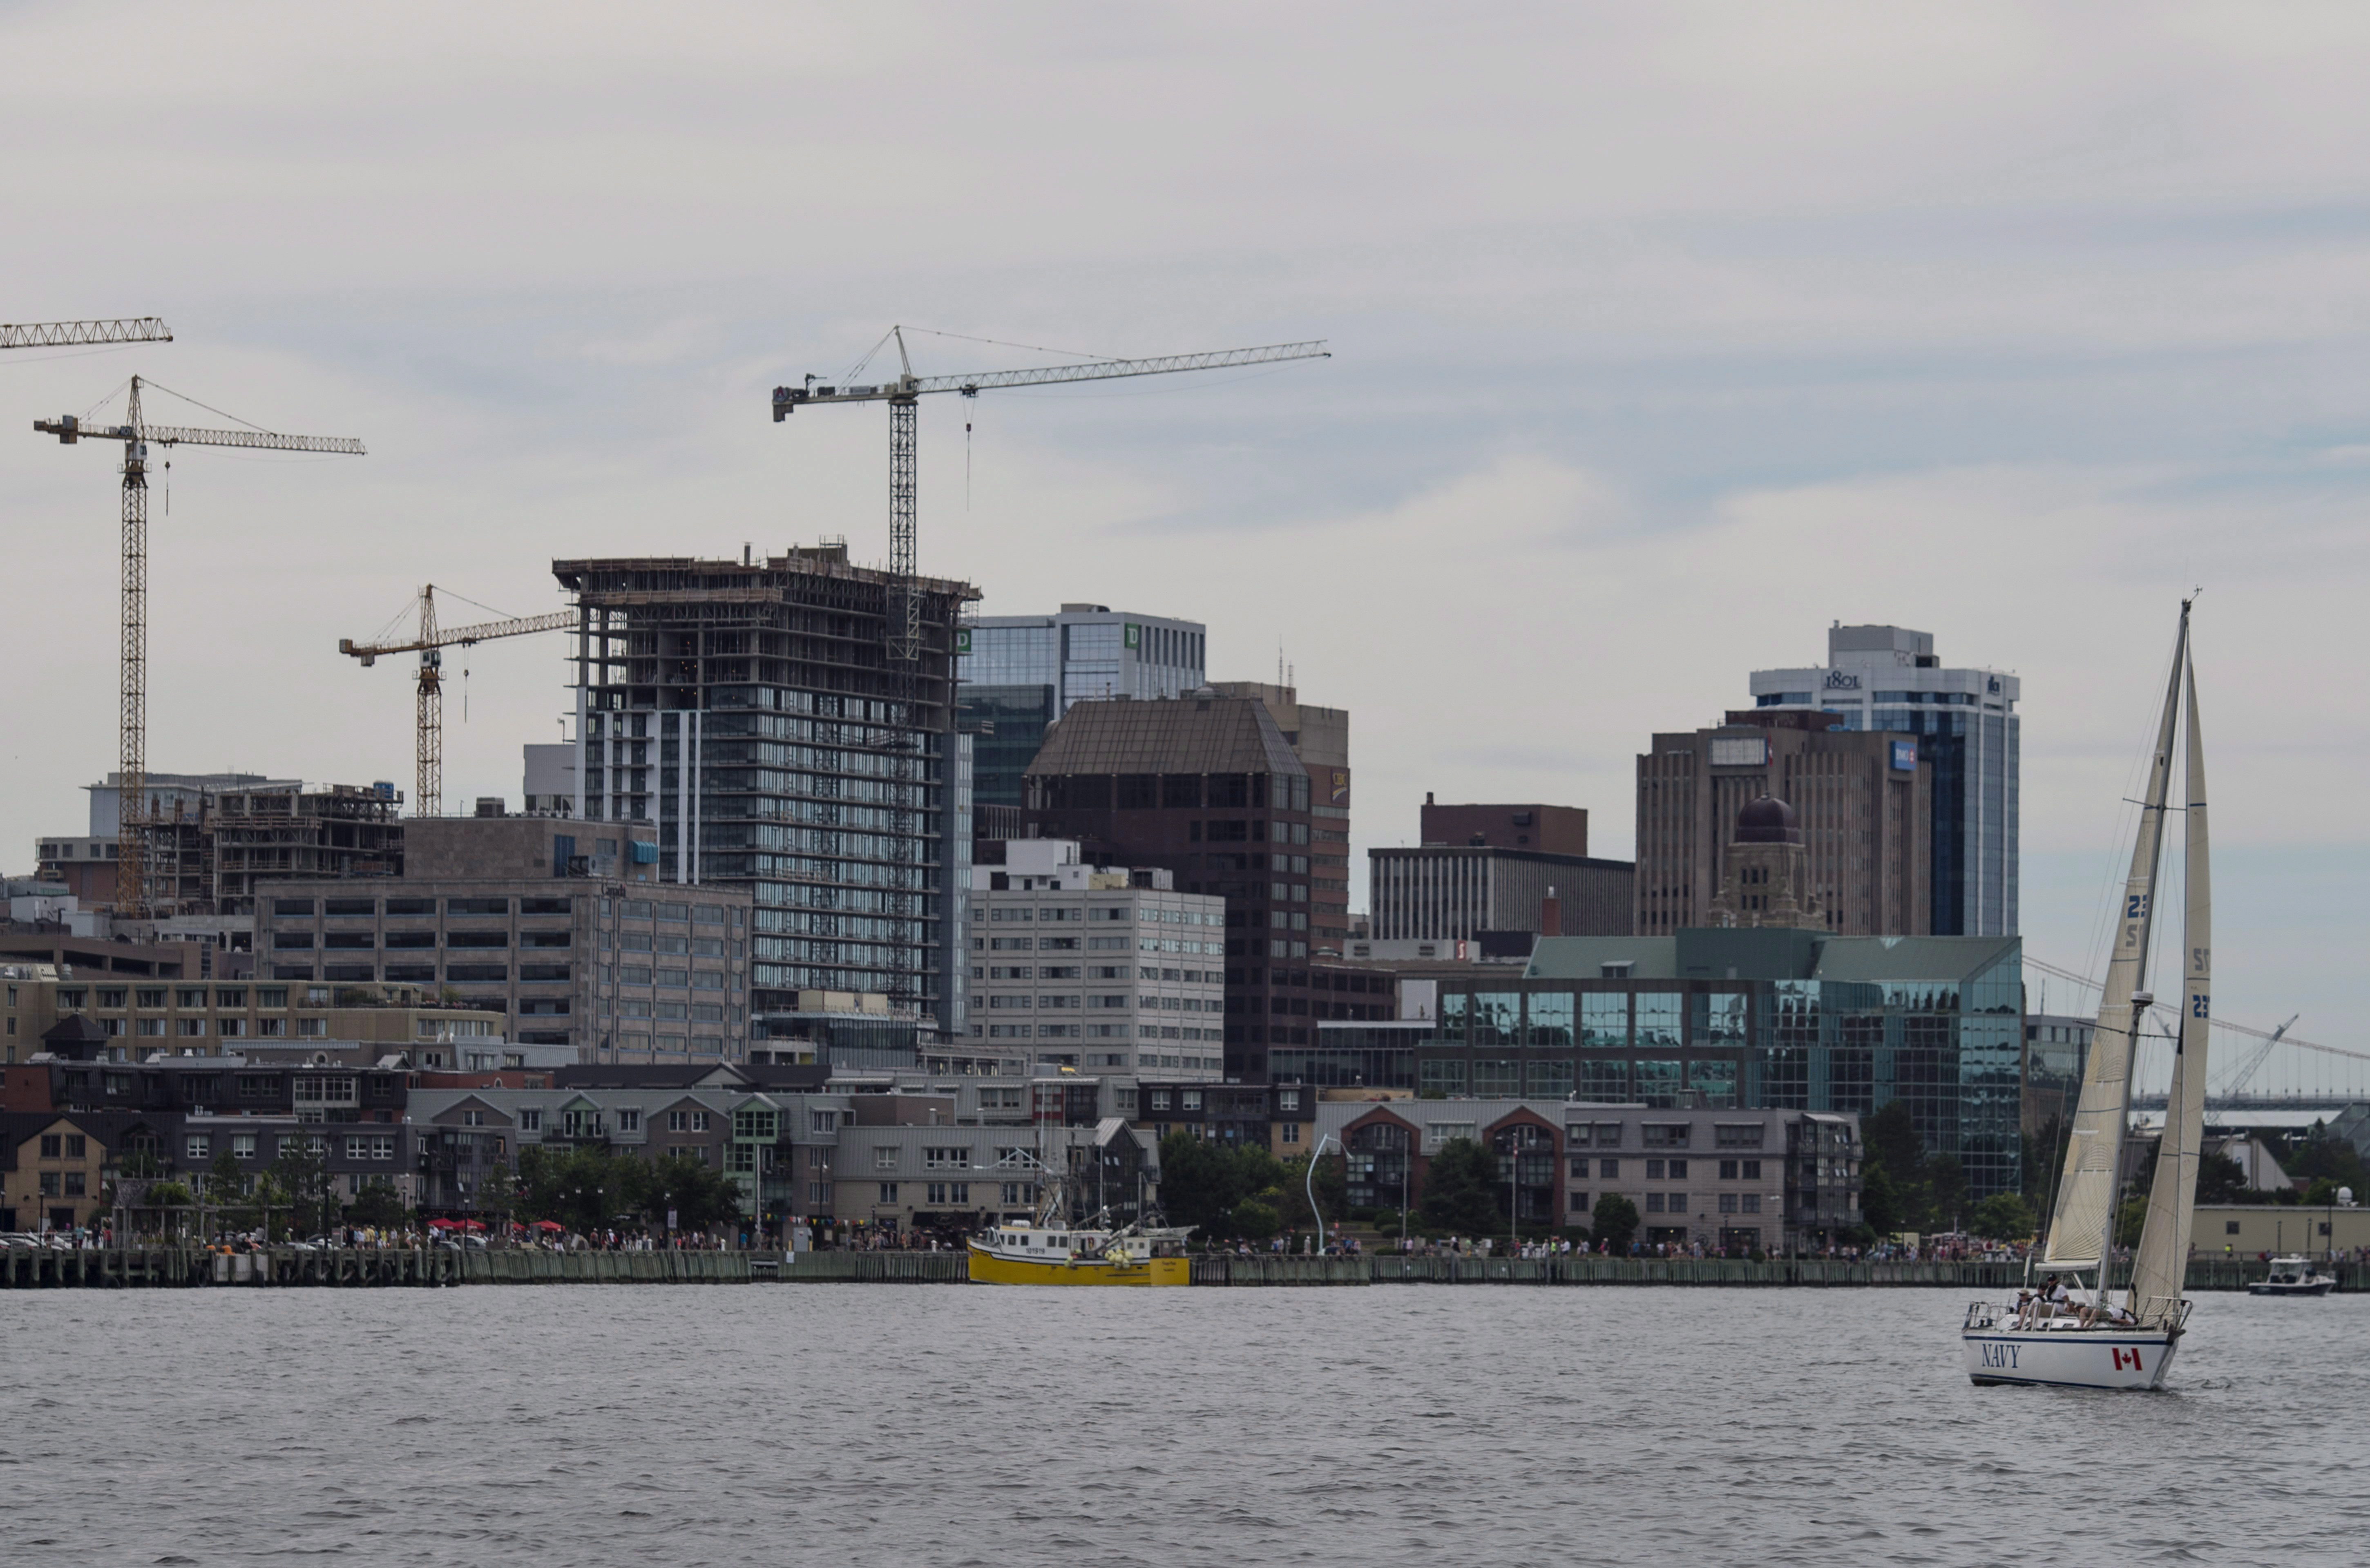 een zeilboot wordt gezien voor de skyline van Halifax op zondag 31 juli 2016. The CANADIAN PRESS / Darren Calabrese